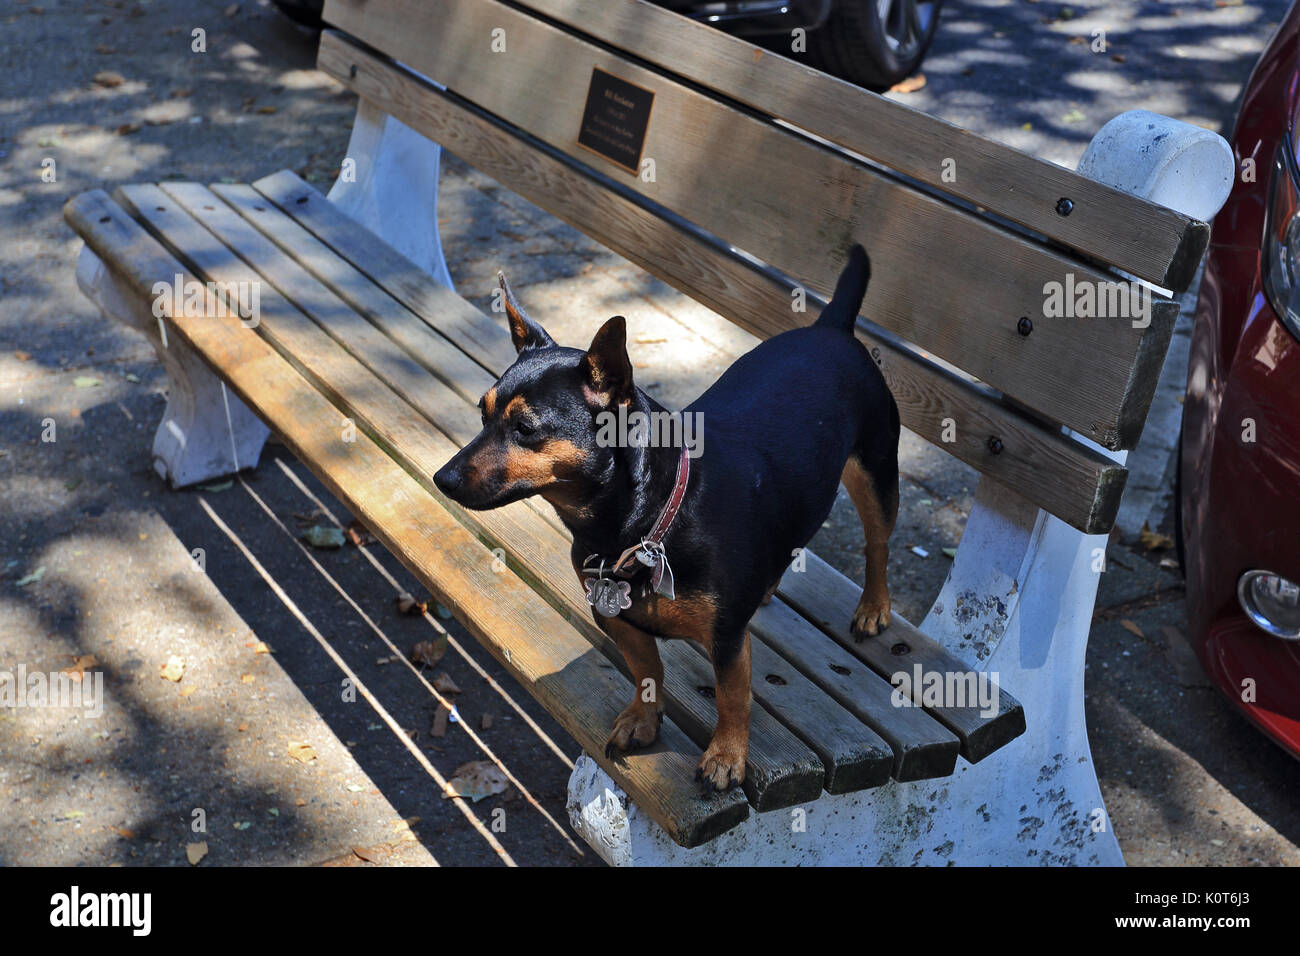 Hund auf einer Bank Sag Harbor Long Island New York Stockfoto